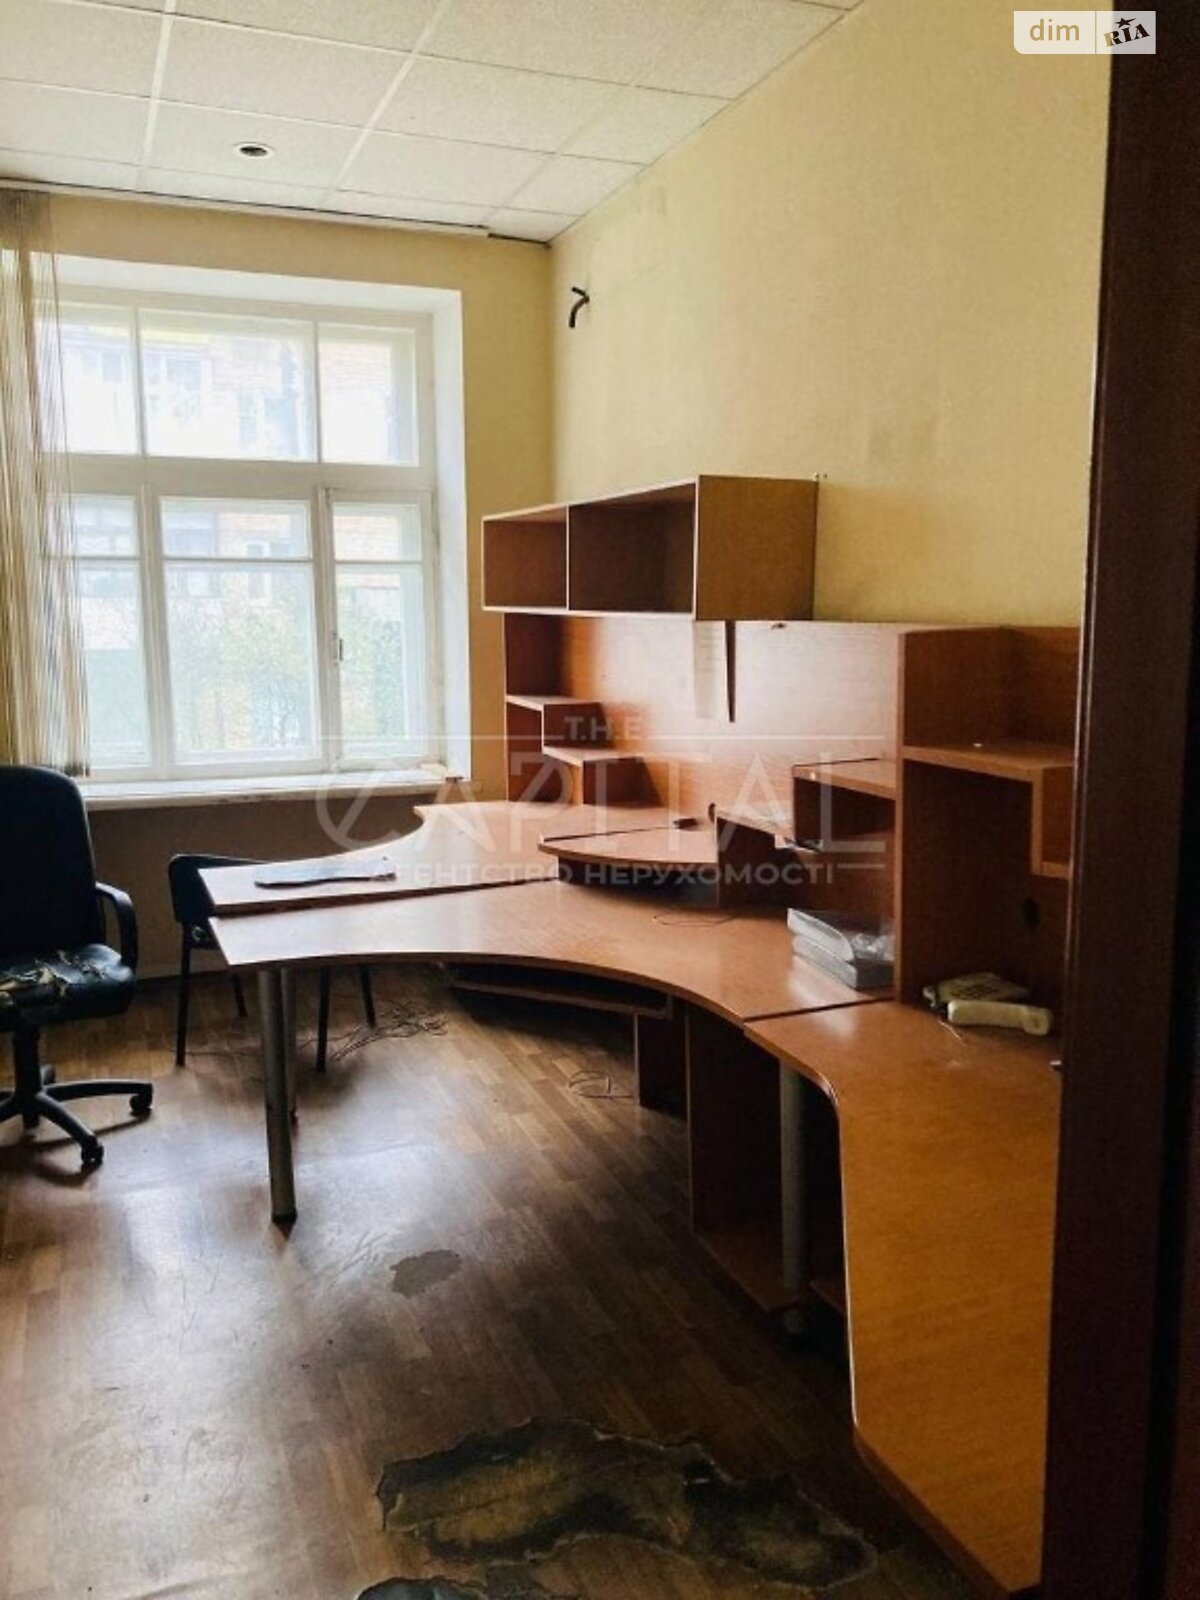 Аренда офисного помещения в Киеве, Верховного Совета бульвар 20, помещений - 40, этаж - 1 фото 1